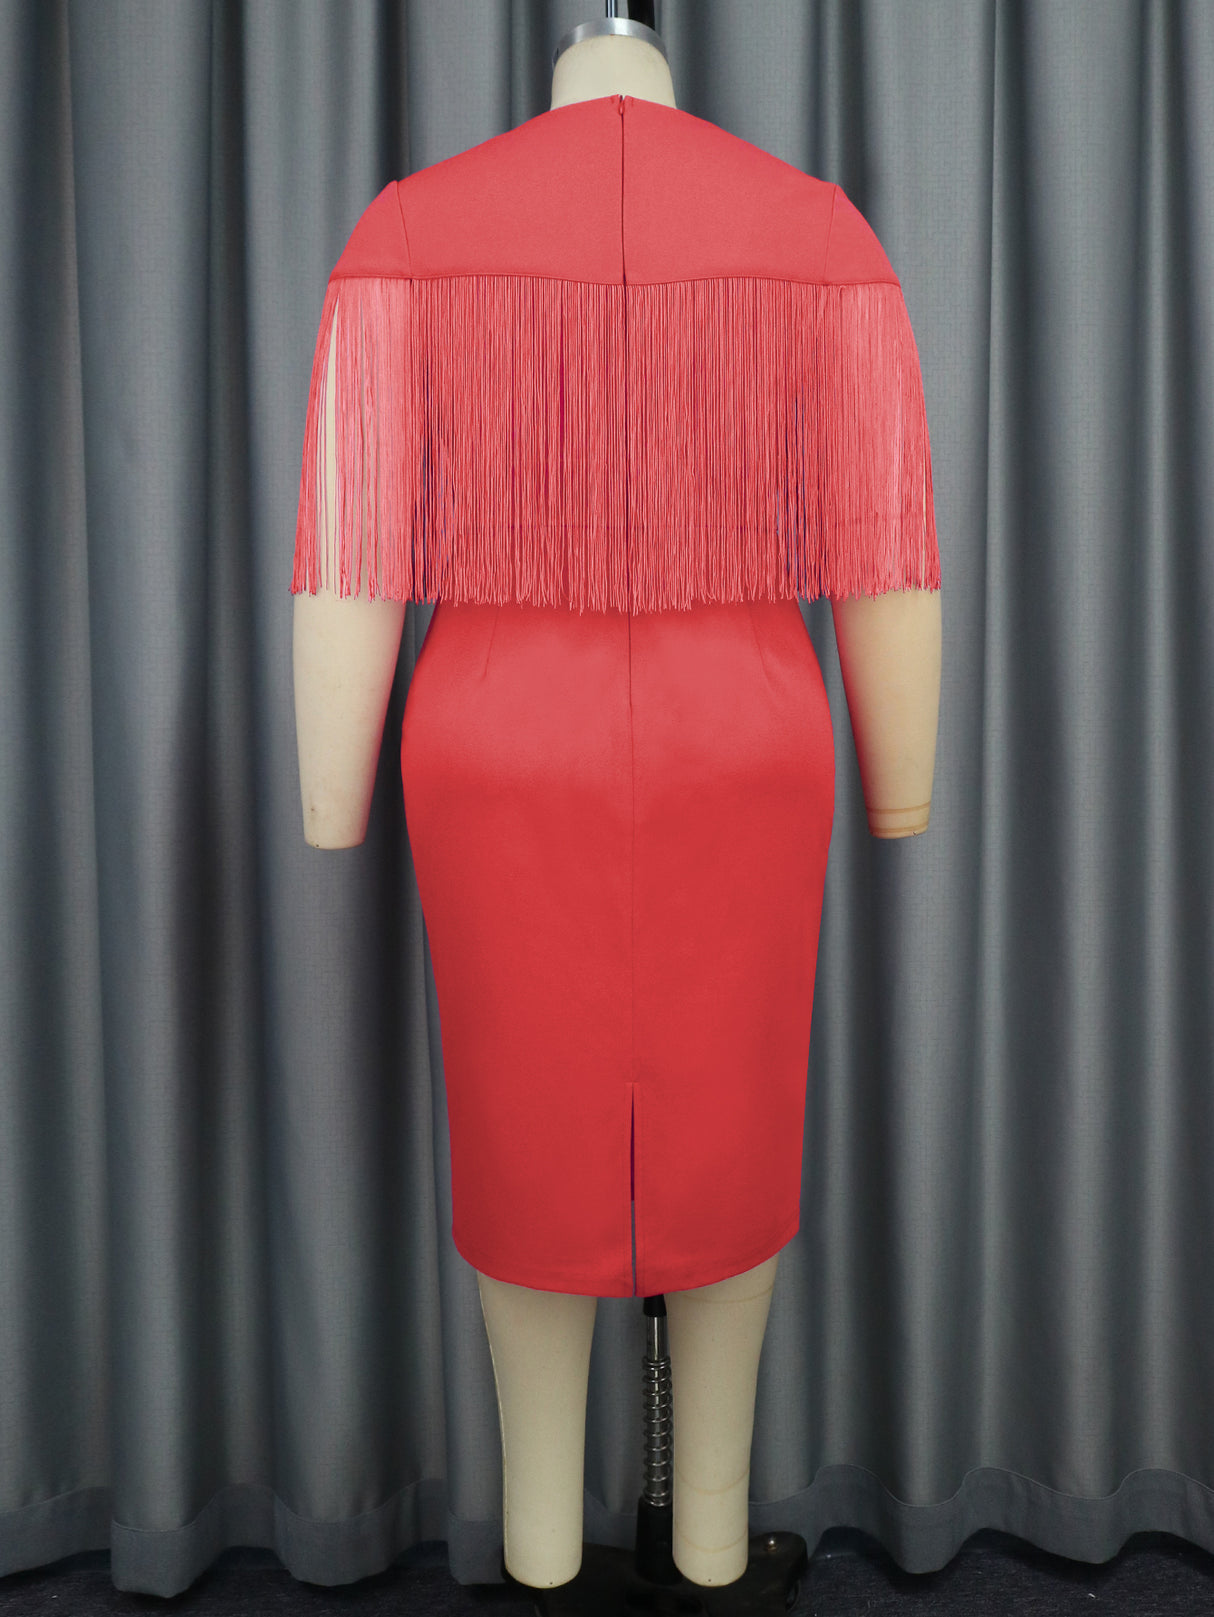 Red Tassel Party Dresses Women Tulle V Neck Short Fringe Sleeve Slim